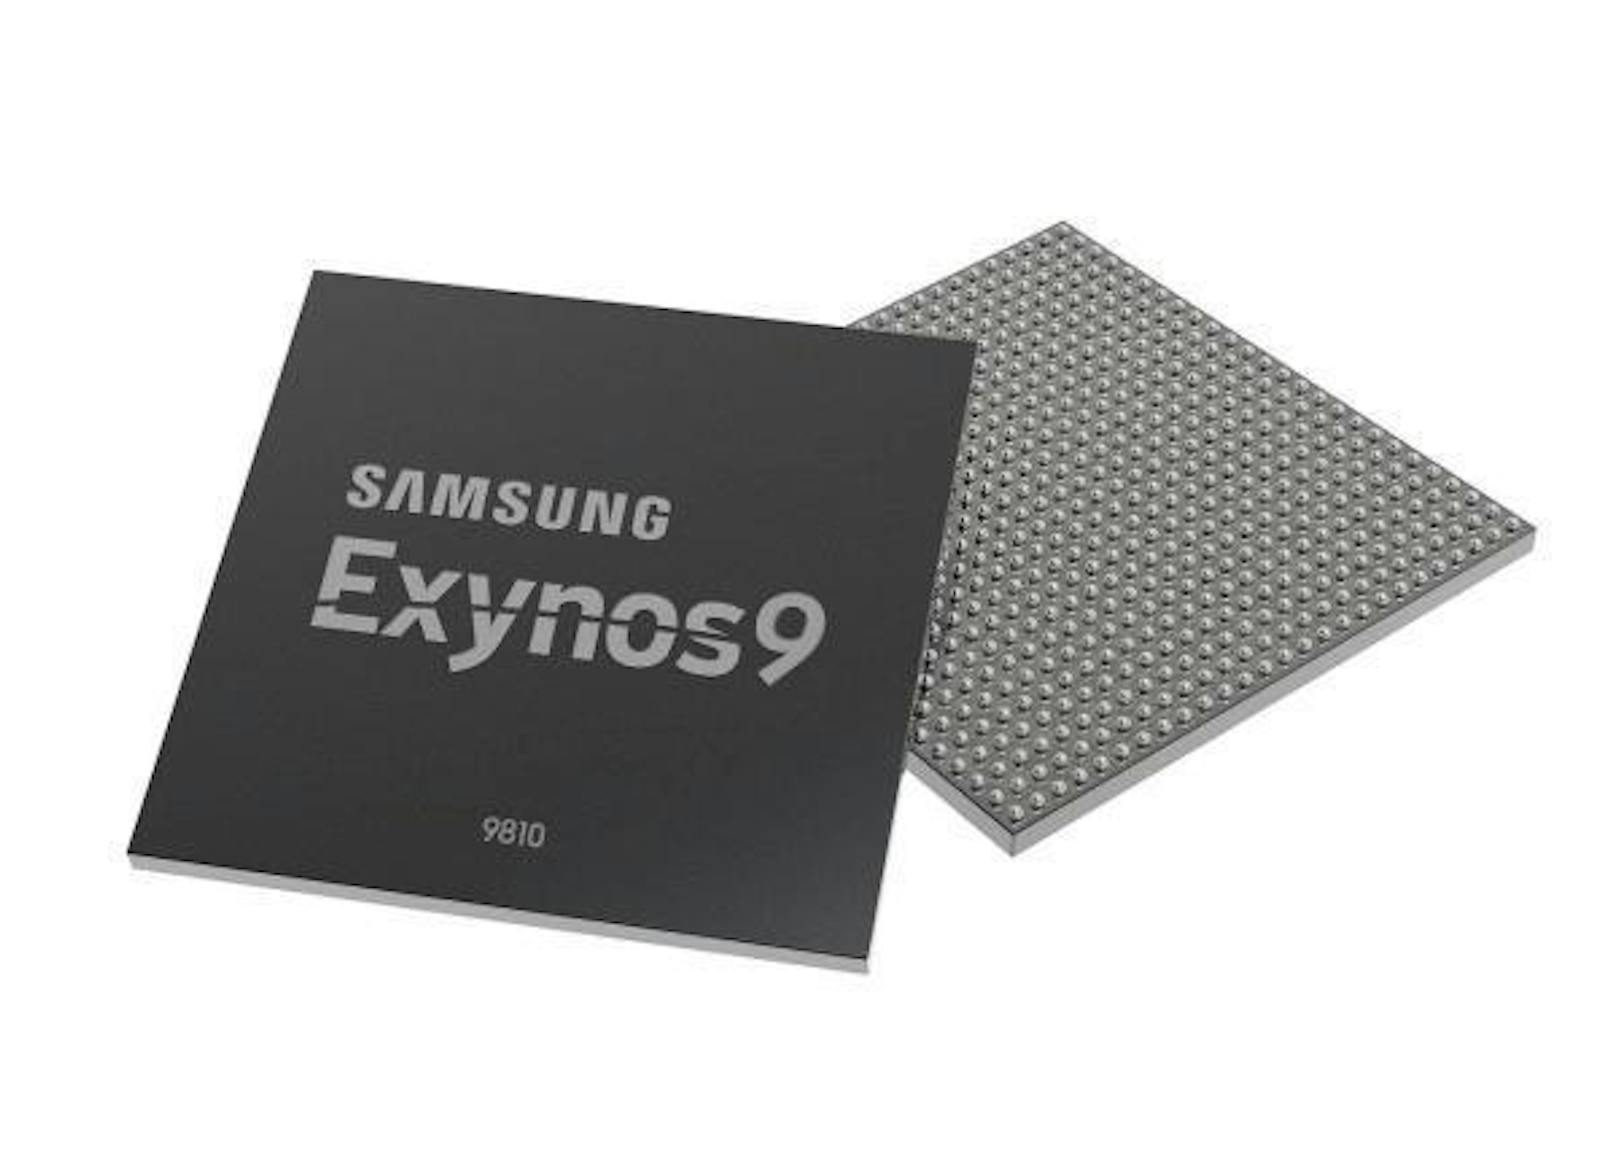 Der neue Smartphone-Chip von Samsung soll ausgesprochen leistungsfähig sein. Der Prozessor soll rund doppelt so schnell sein wie sein Vorgänger. Verbaut werden soll der Chip in das kommende Galaxy S9, das im Frühling erwartet wird. Die zusätzliche Performance soll unter anderem eine 3D-Gesichtserkennung ermöglichen. Zudem soll der Exynos 9810 für Aufgaben rund um die künstliche Intelligenz optimiert sein.